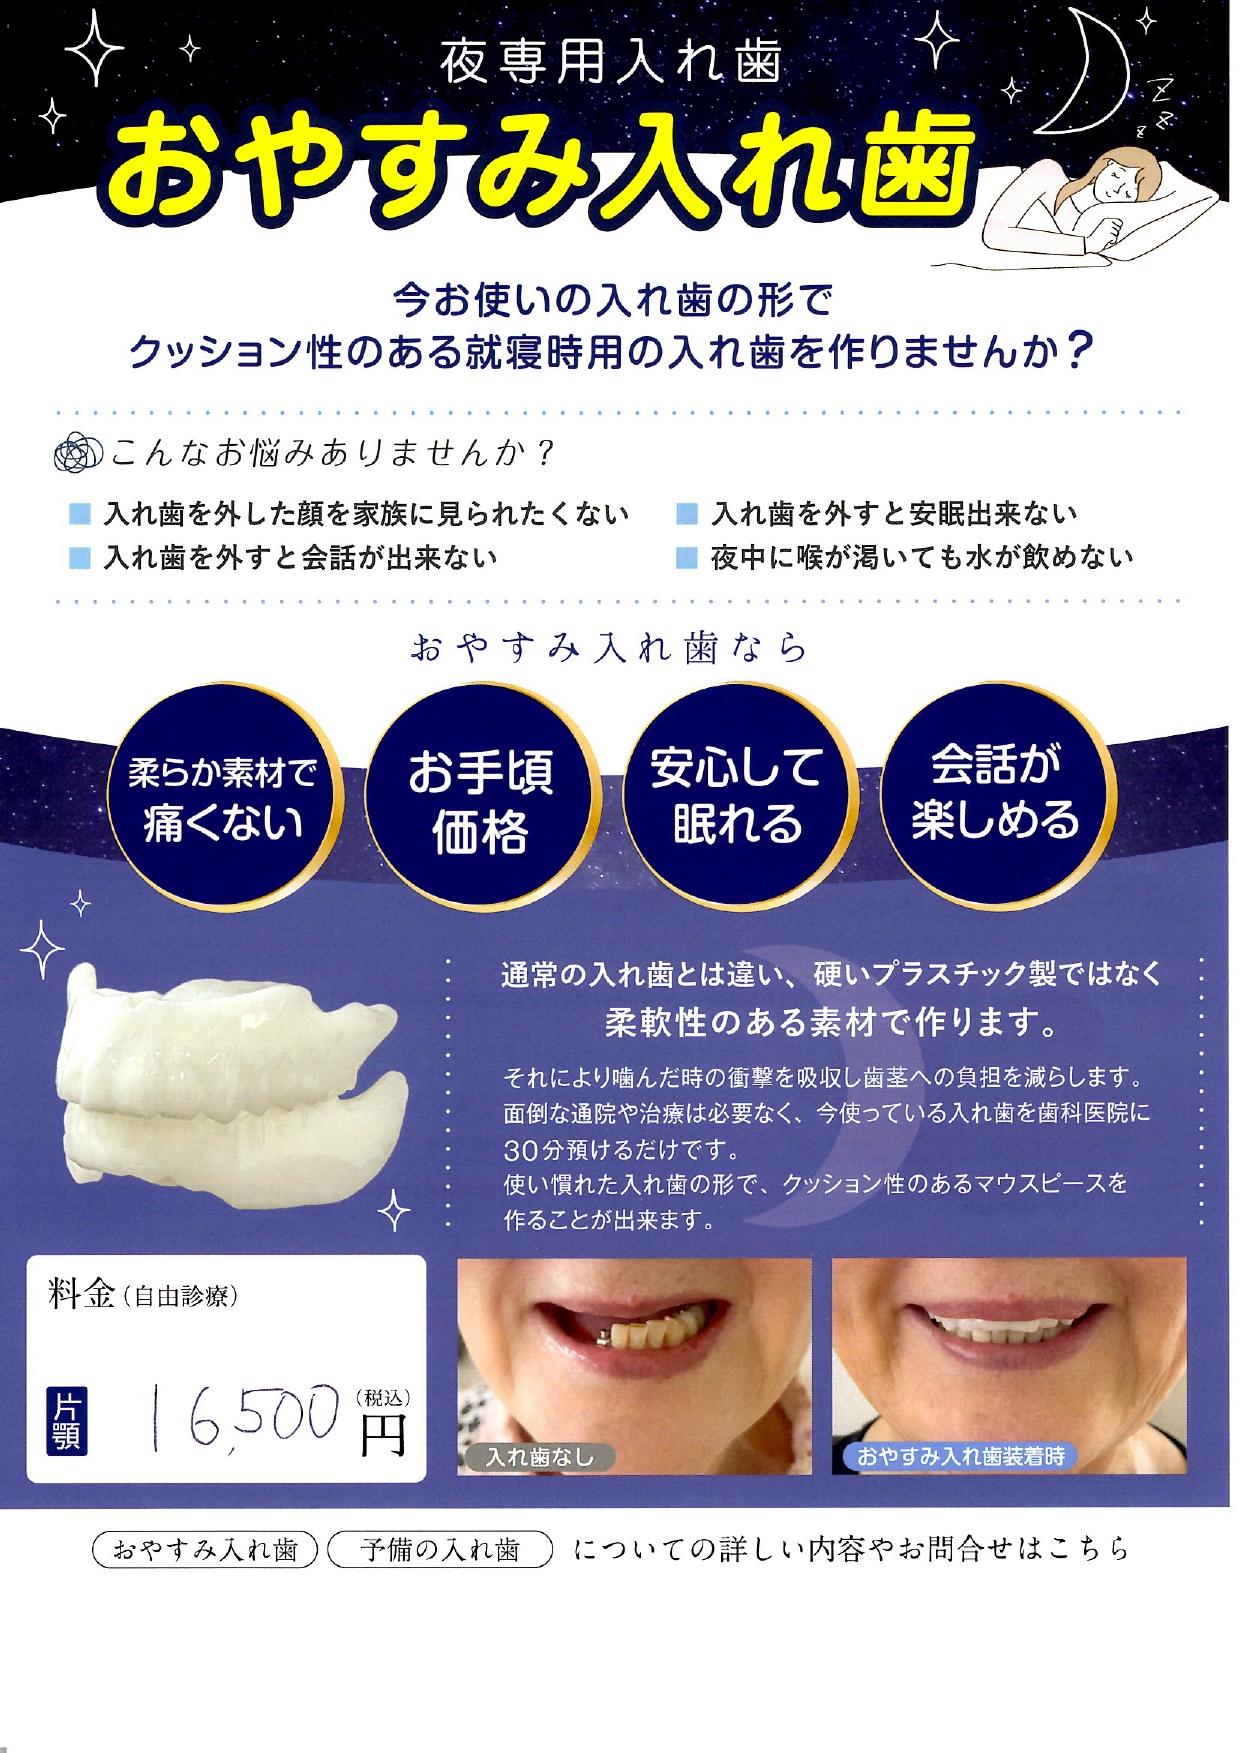 岩見沢市の歯医者で入れ歯治療